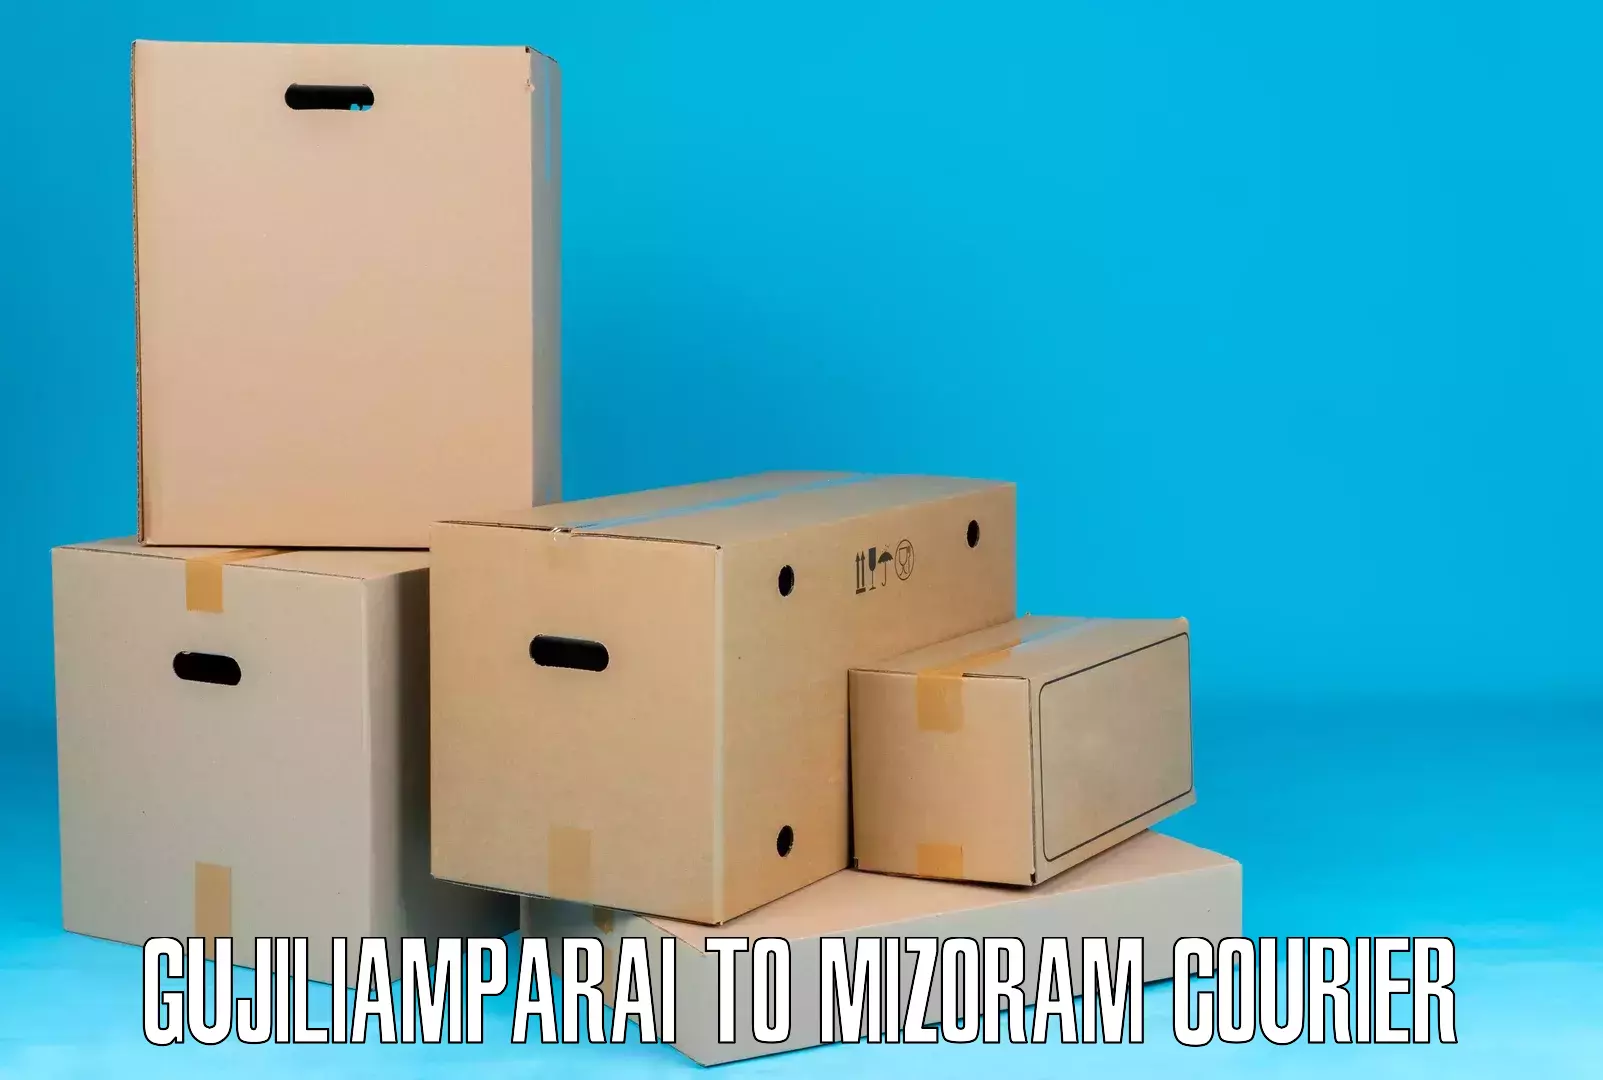 Multi-service courier options Gujiliamparai to Aizawl